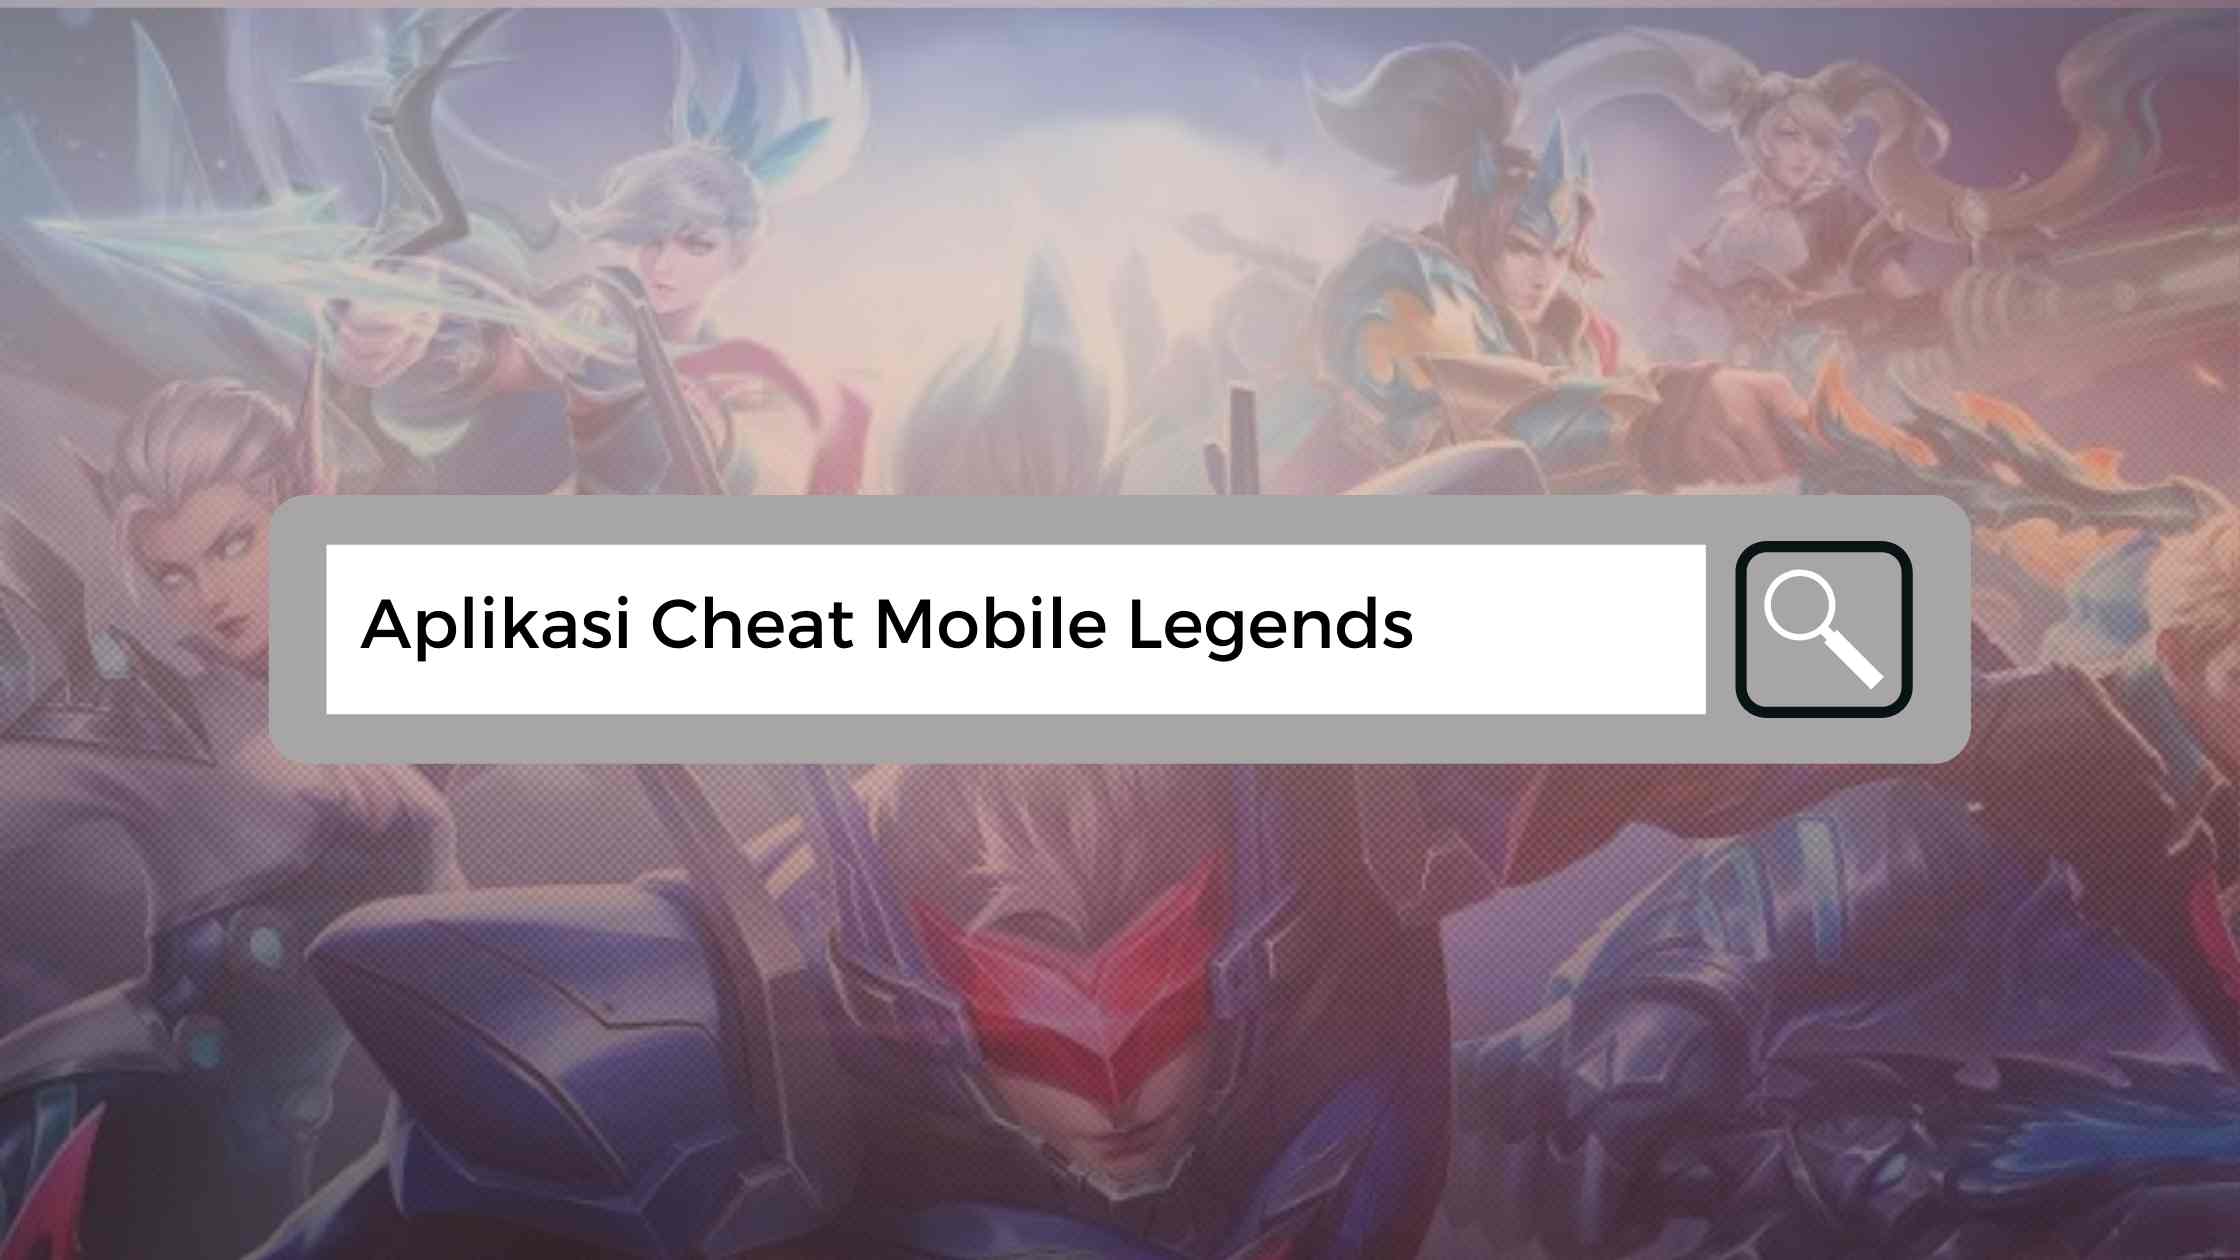 7 Aplikasi Cheat Mobile Legends yang Sering Digunakan